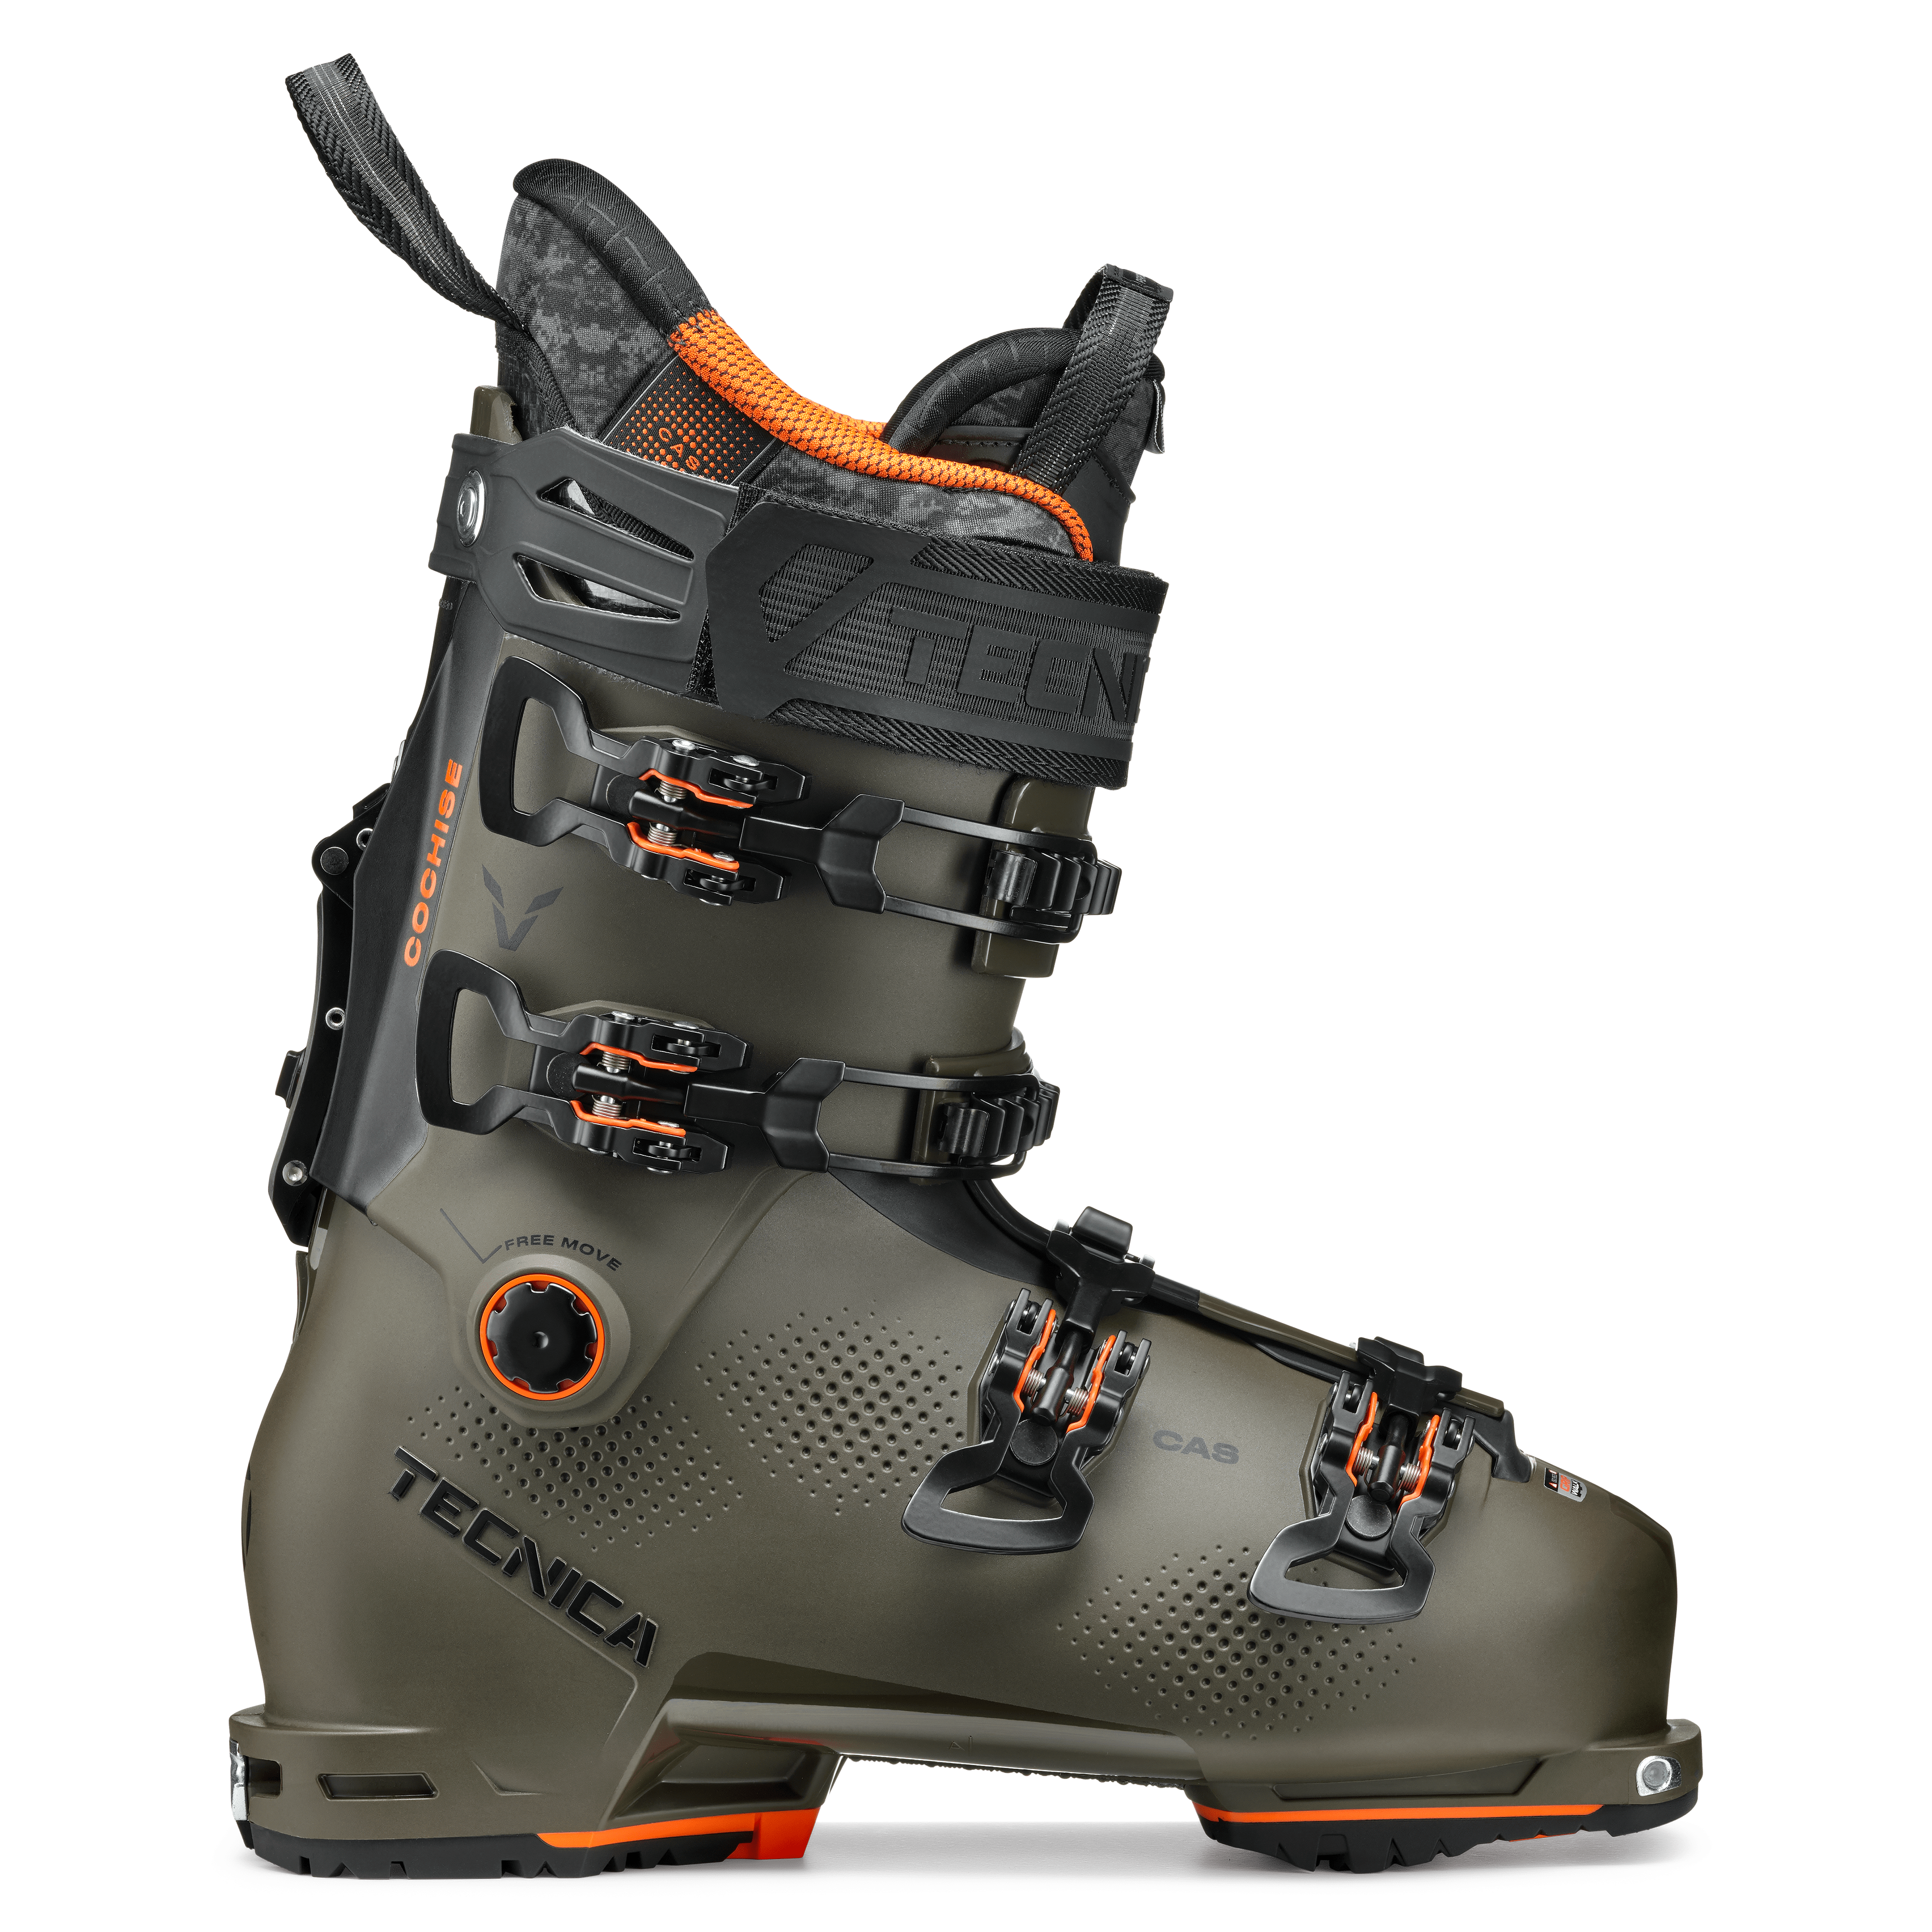 Blizzard Ski, Tecnica Ski Boots, Tecnica Trekking Shoes and Trail 